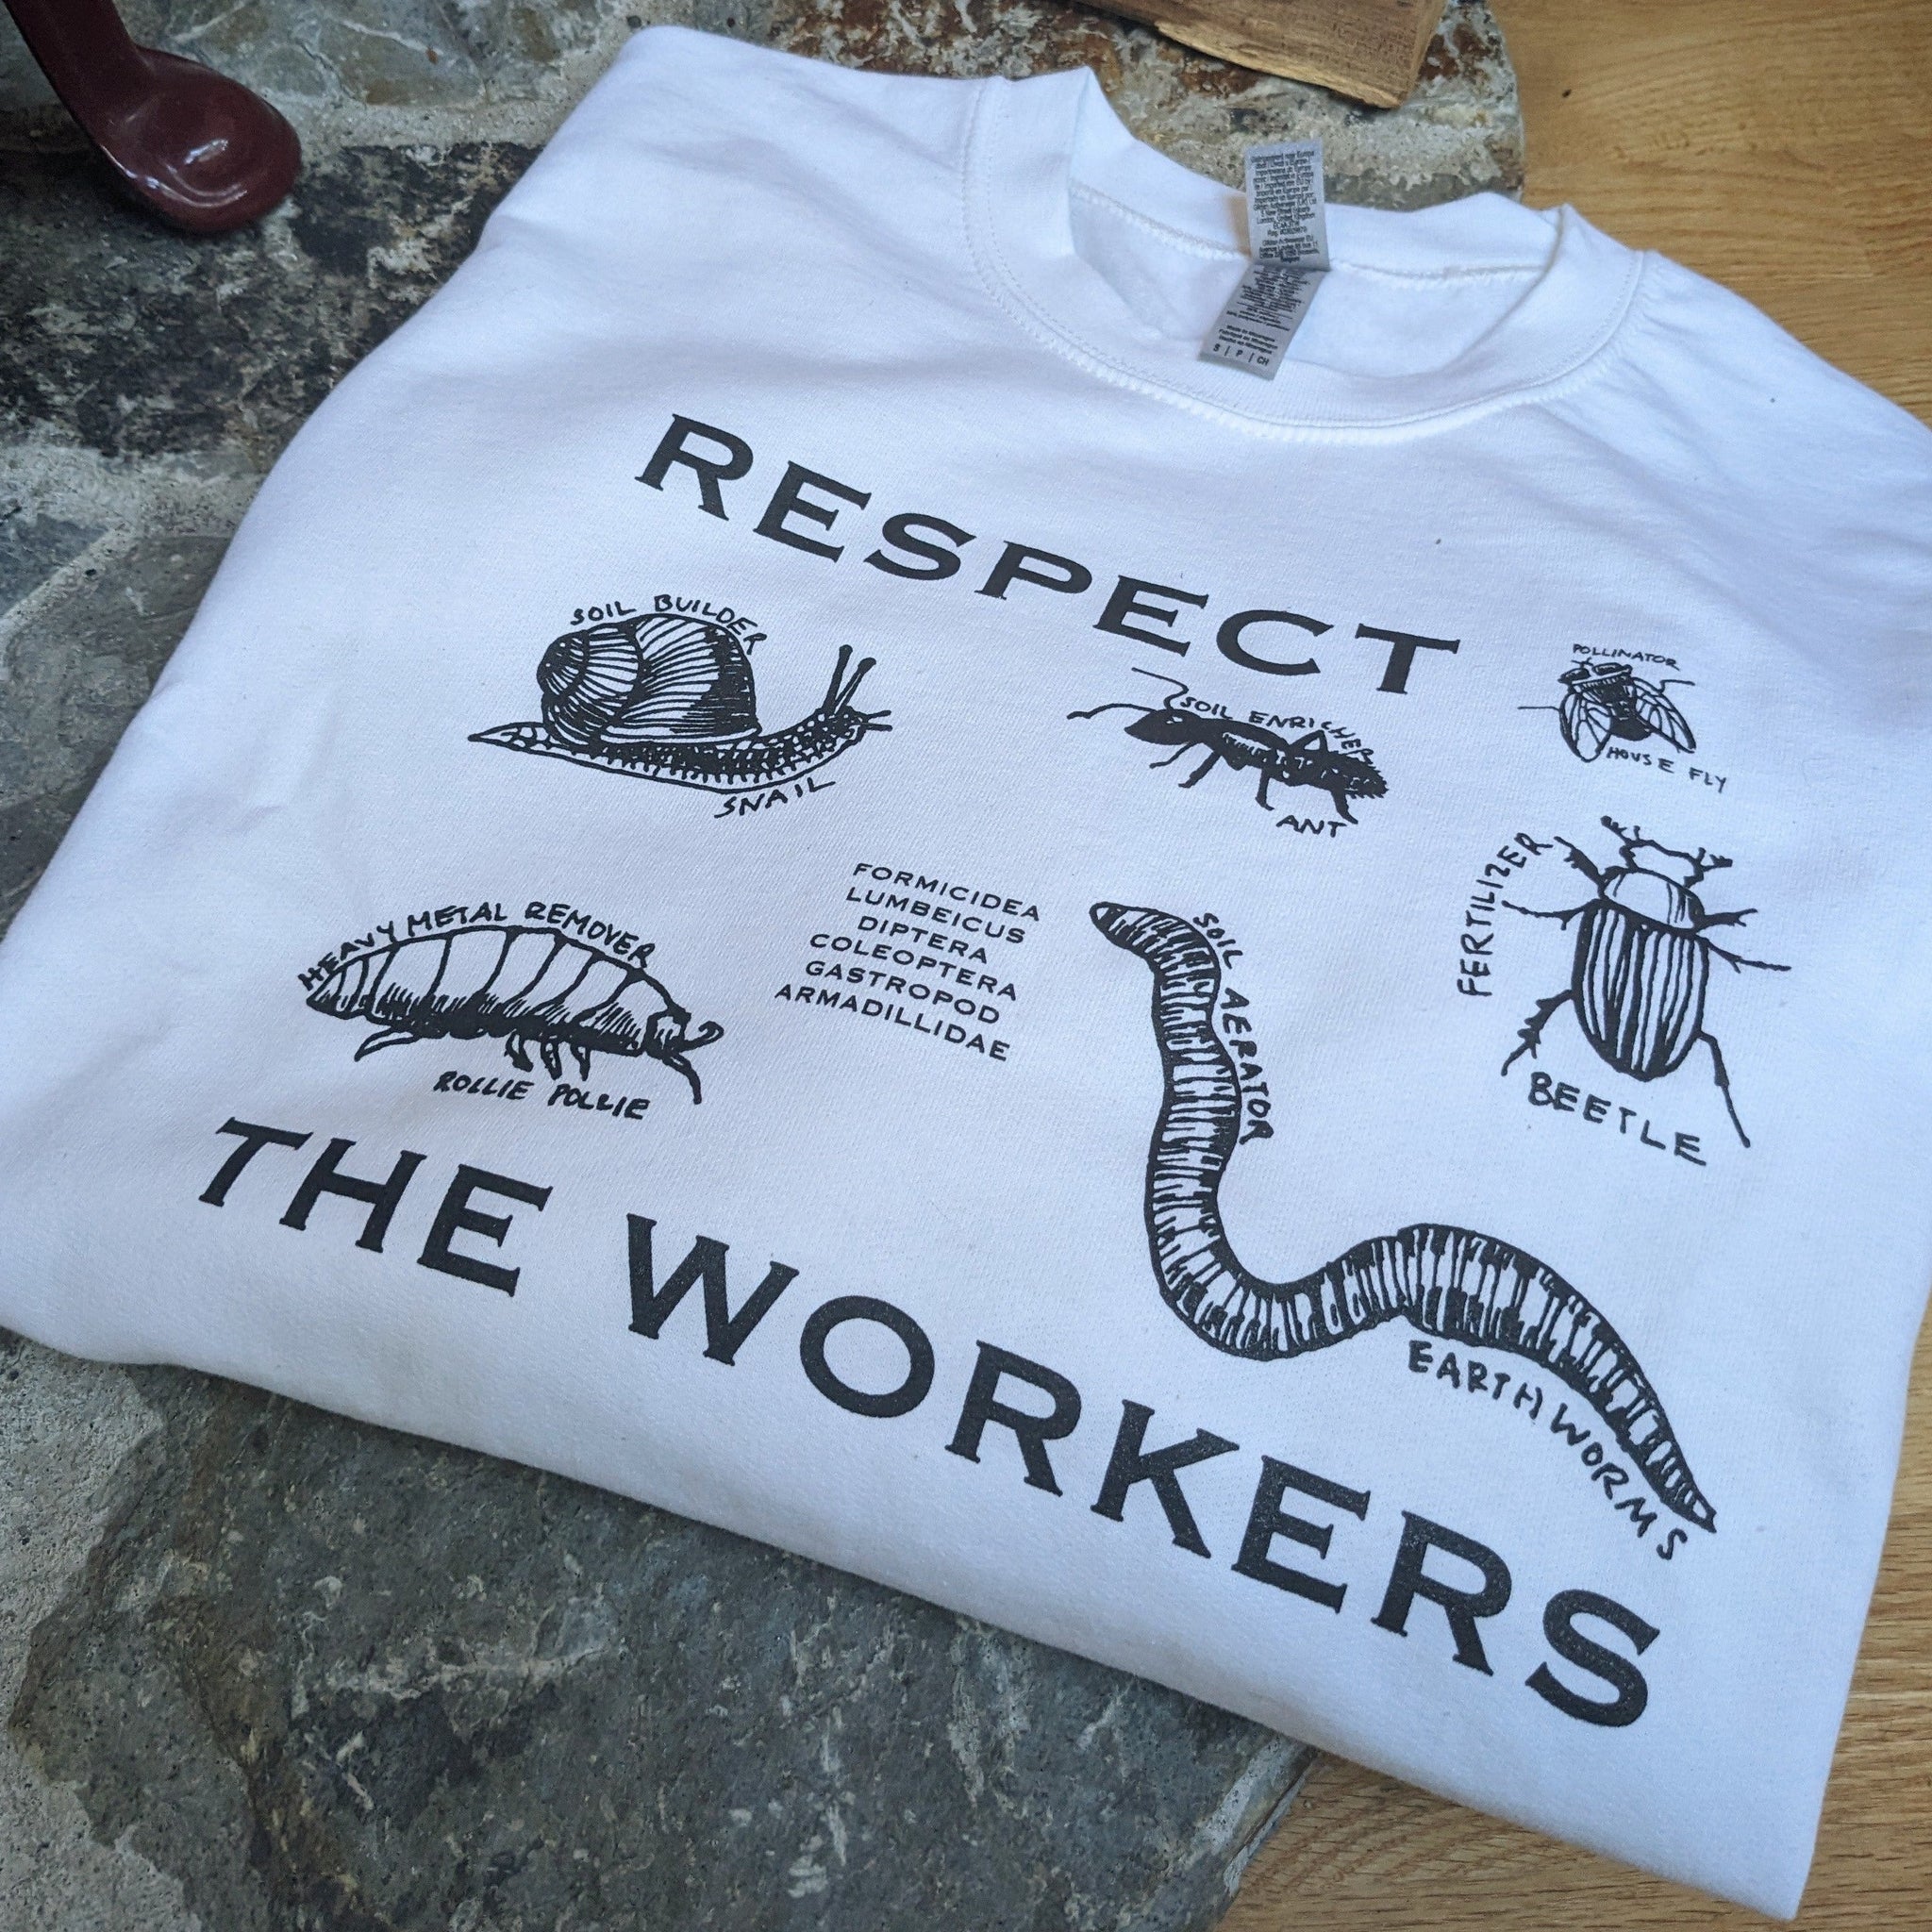 Respect the Workers Crewneck Sweatshirt